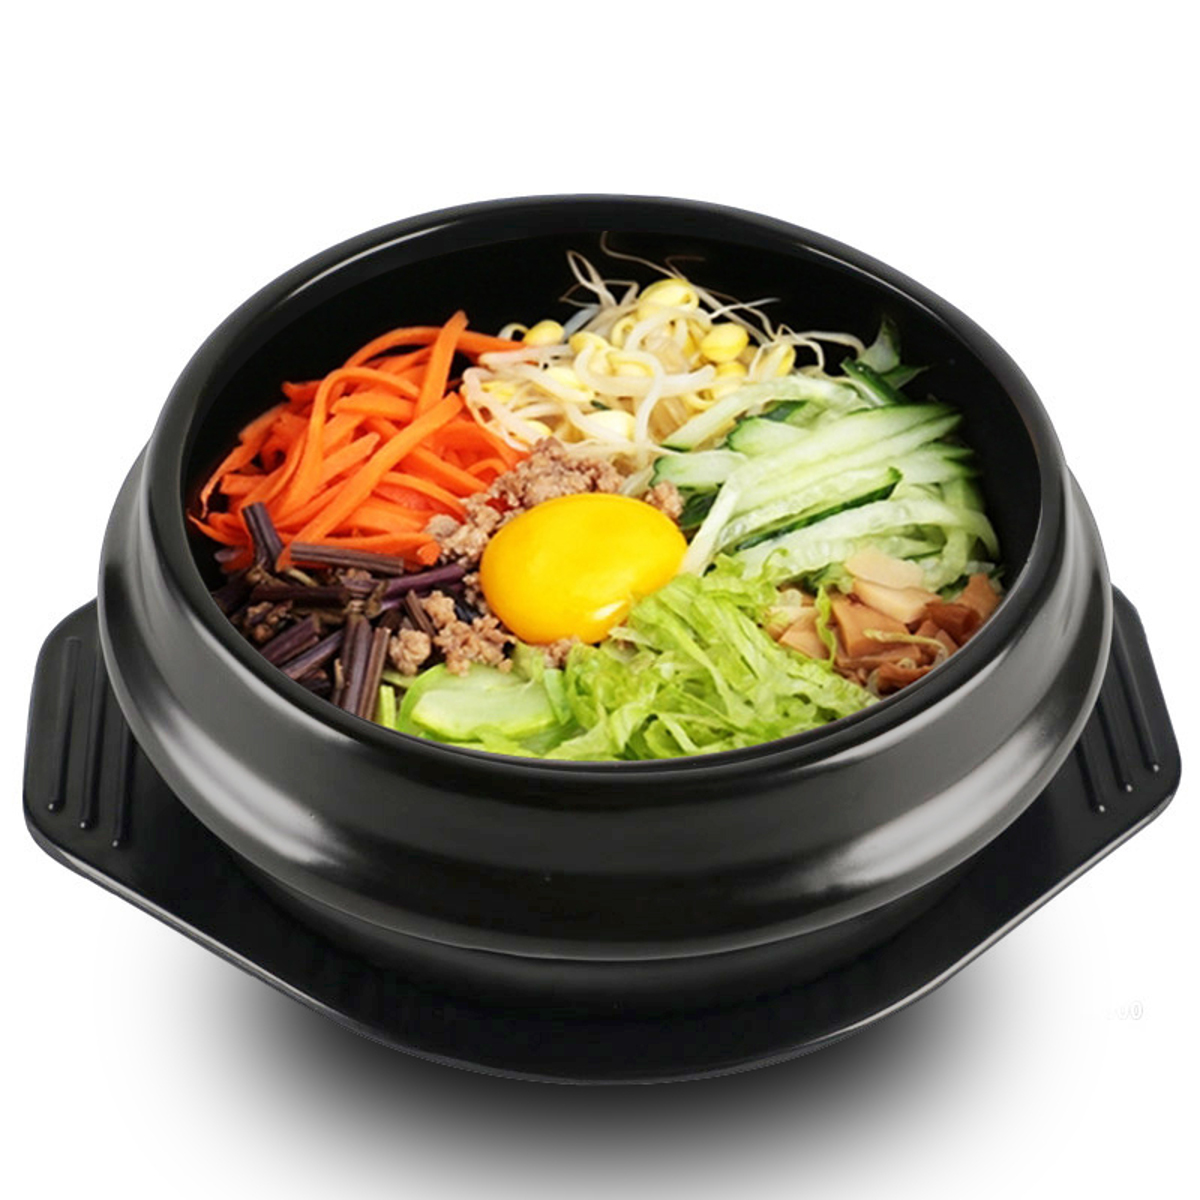 

Корейский DOLSOT миска Большой размер глиняной посуды Каменный горшок Бибимбап Кулинария + Набор для ринга Райс